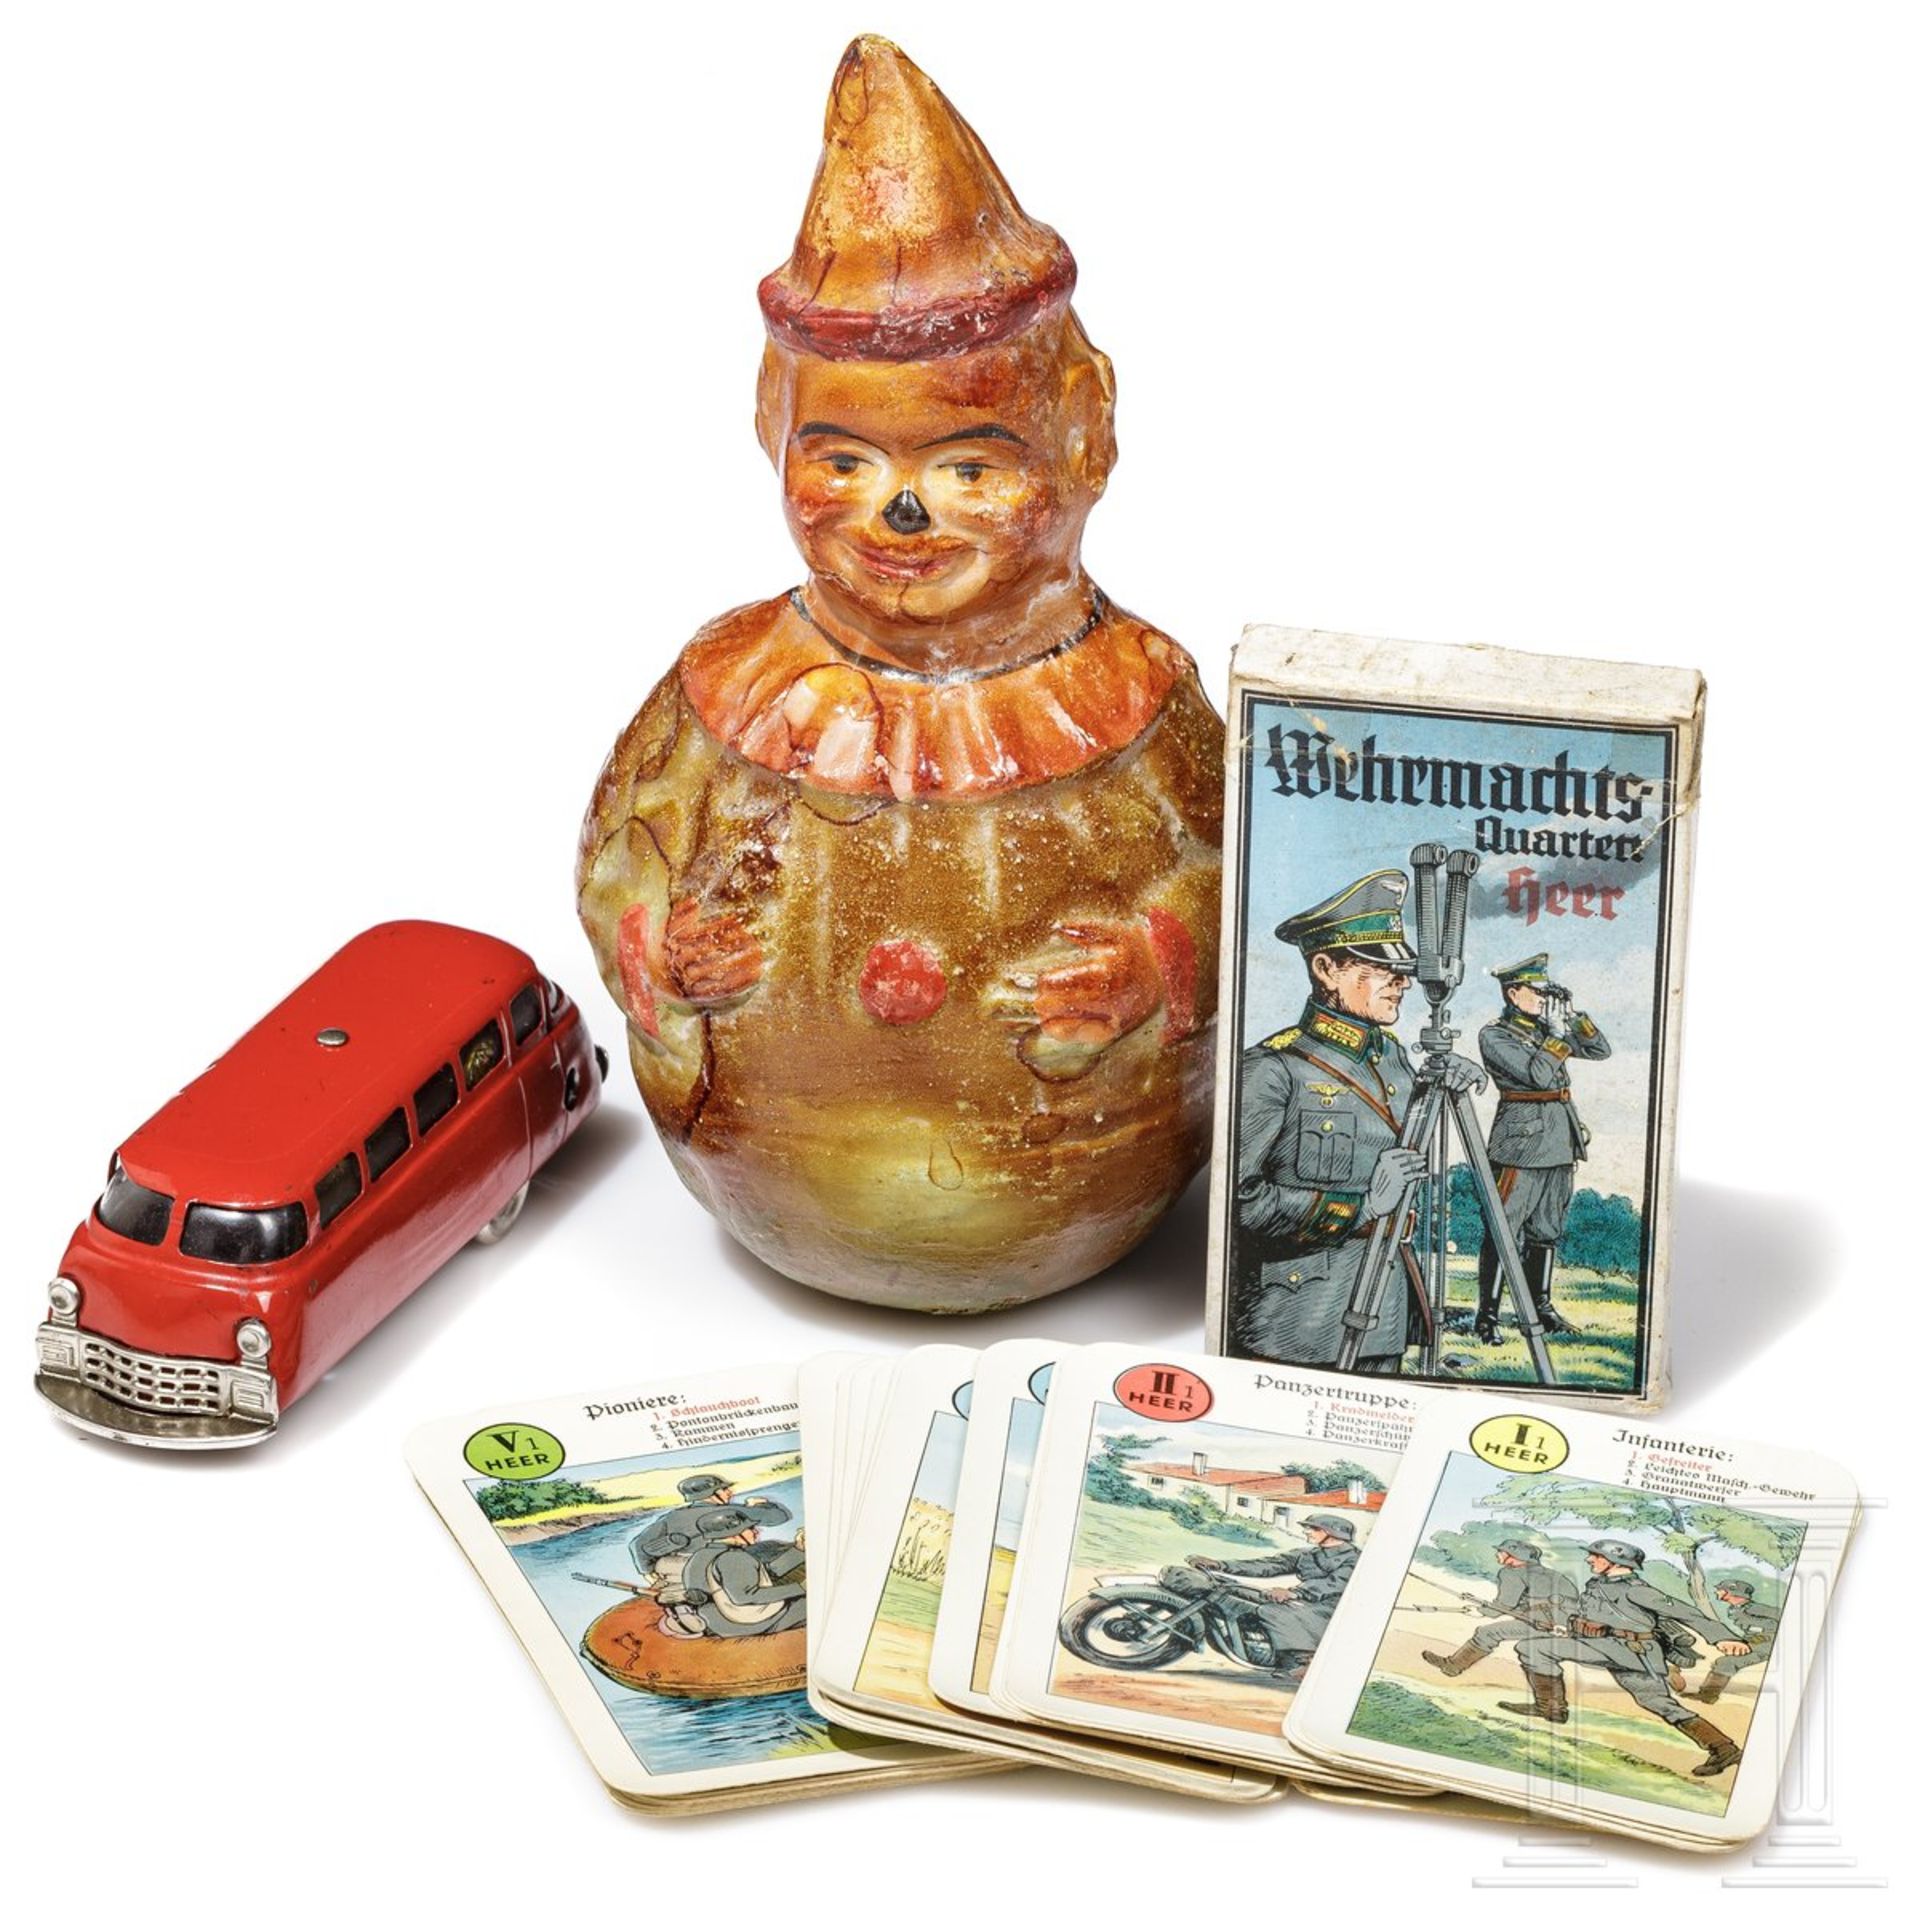 Konvolut Spielzeug mit Wehrmachts-Quartett "Heer", Schuco-Bus 1004, Mirako-Patent und einem Pappmach